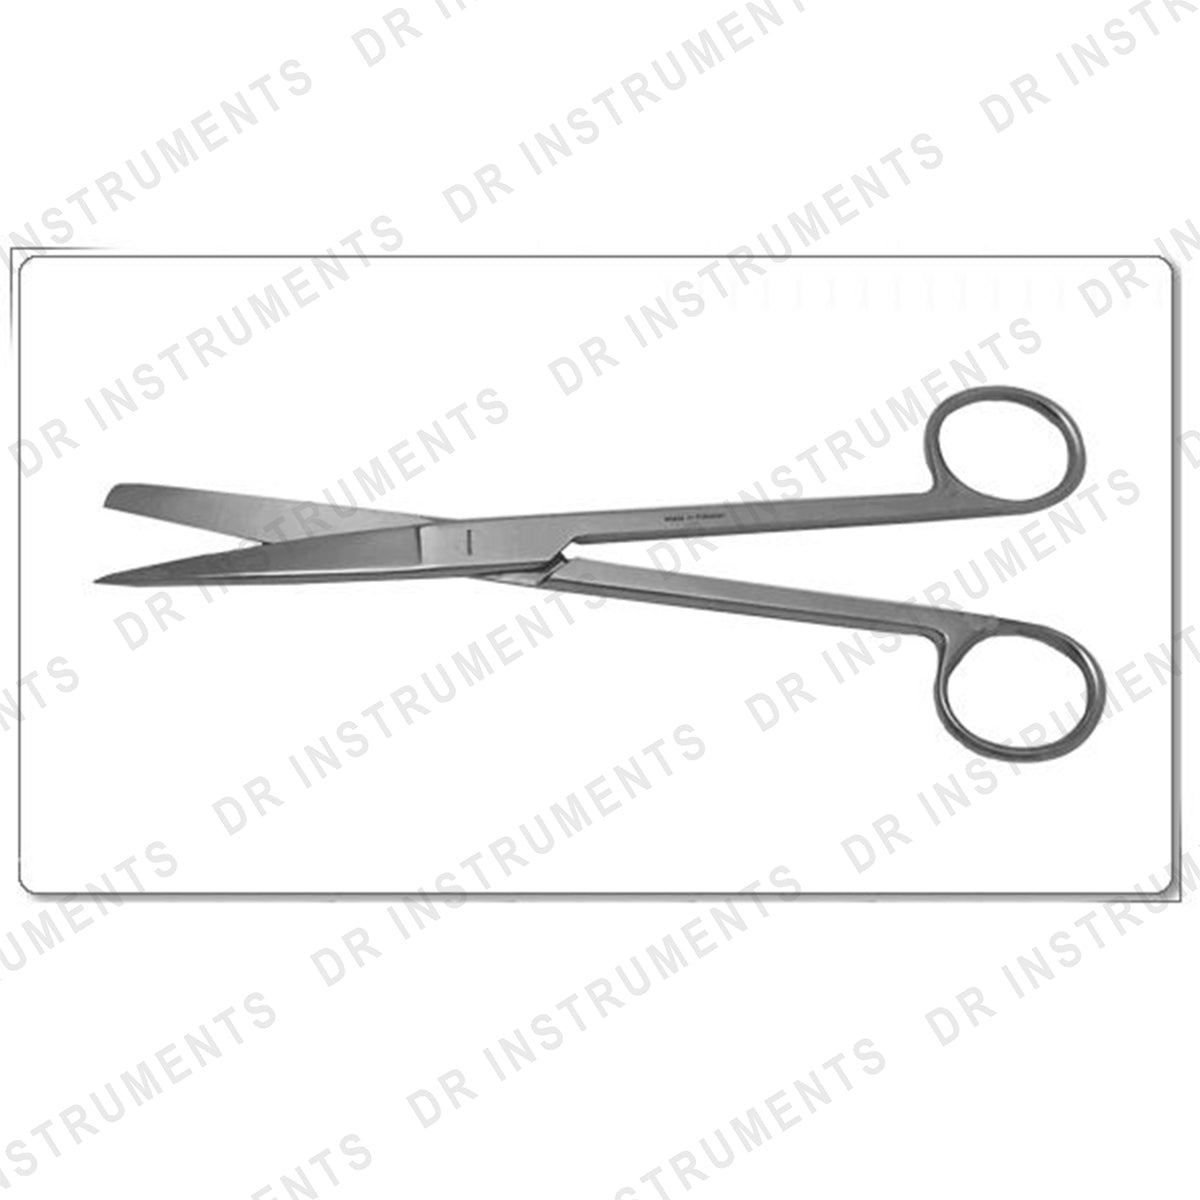 Surgical Scissors - 8.0